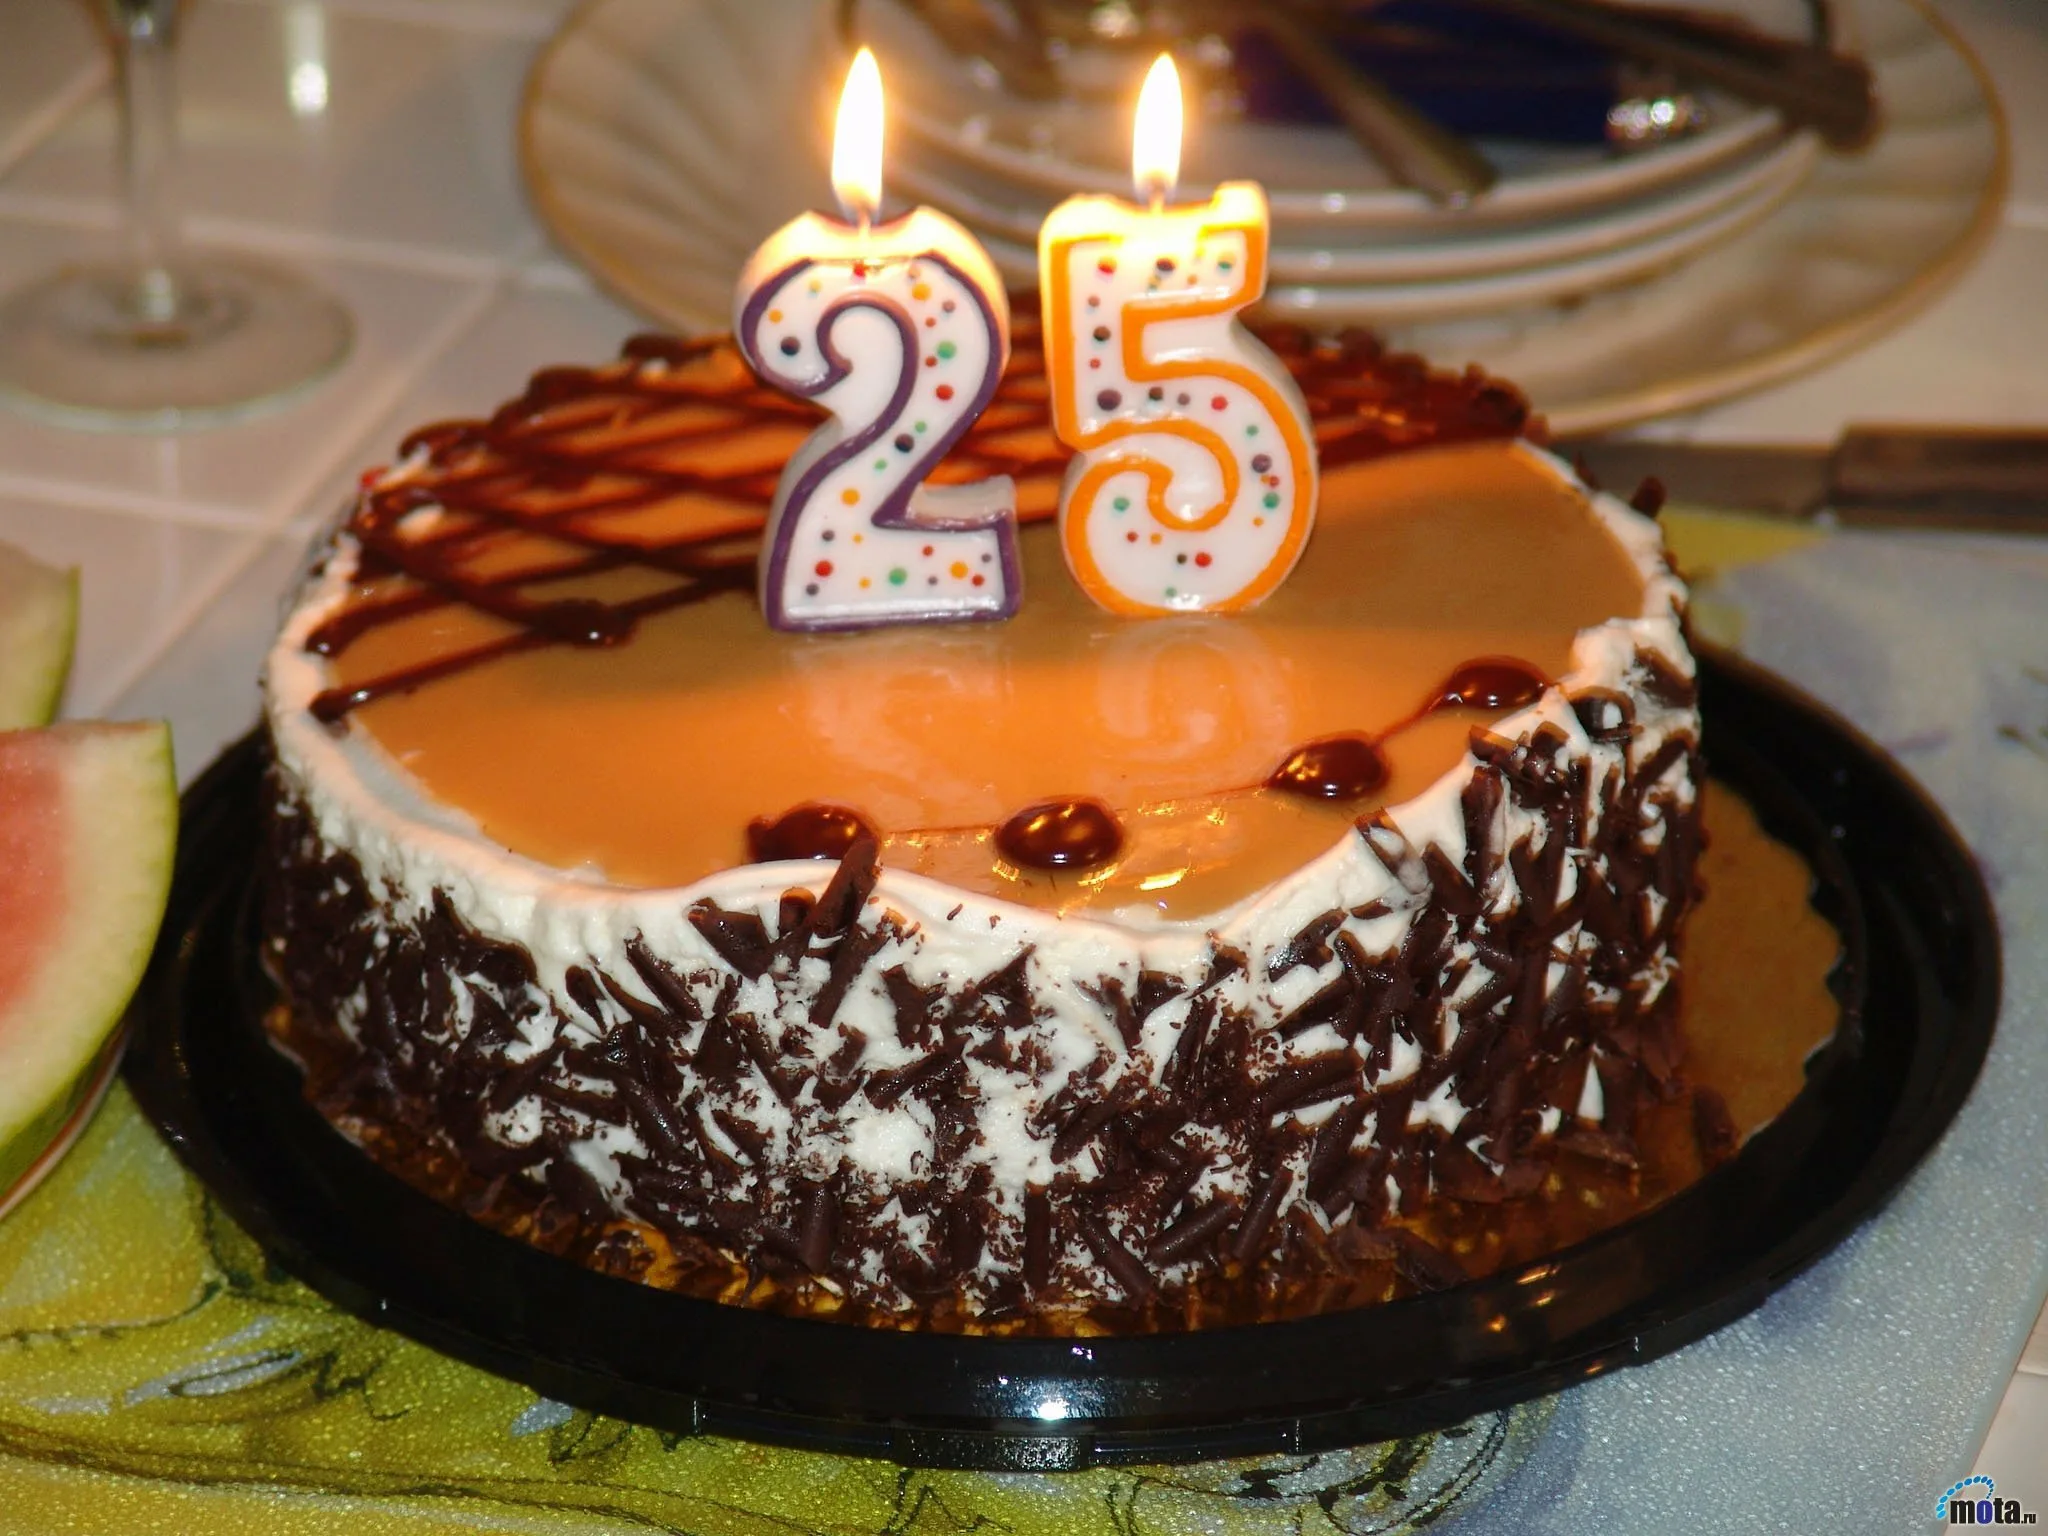 17 апреля 21 год. Торт с днем рождения!. С днем рождения 25. Торт с днём рождения картинки. Торт на юбилей.